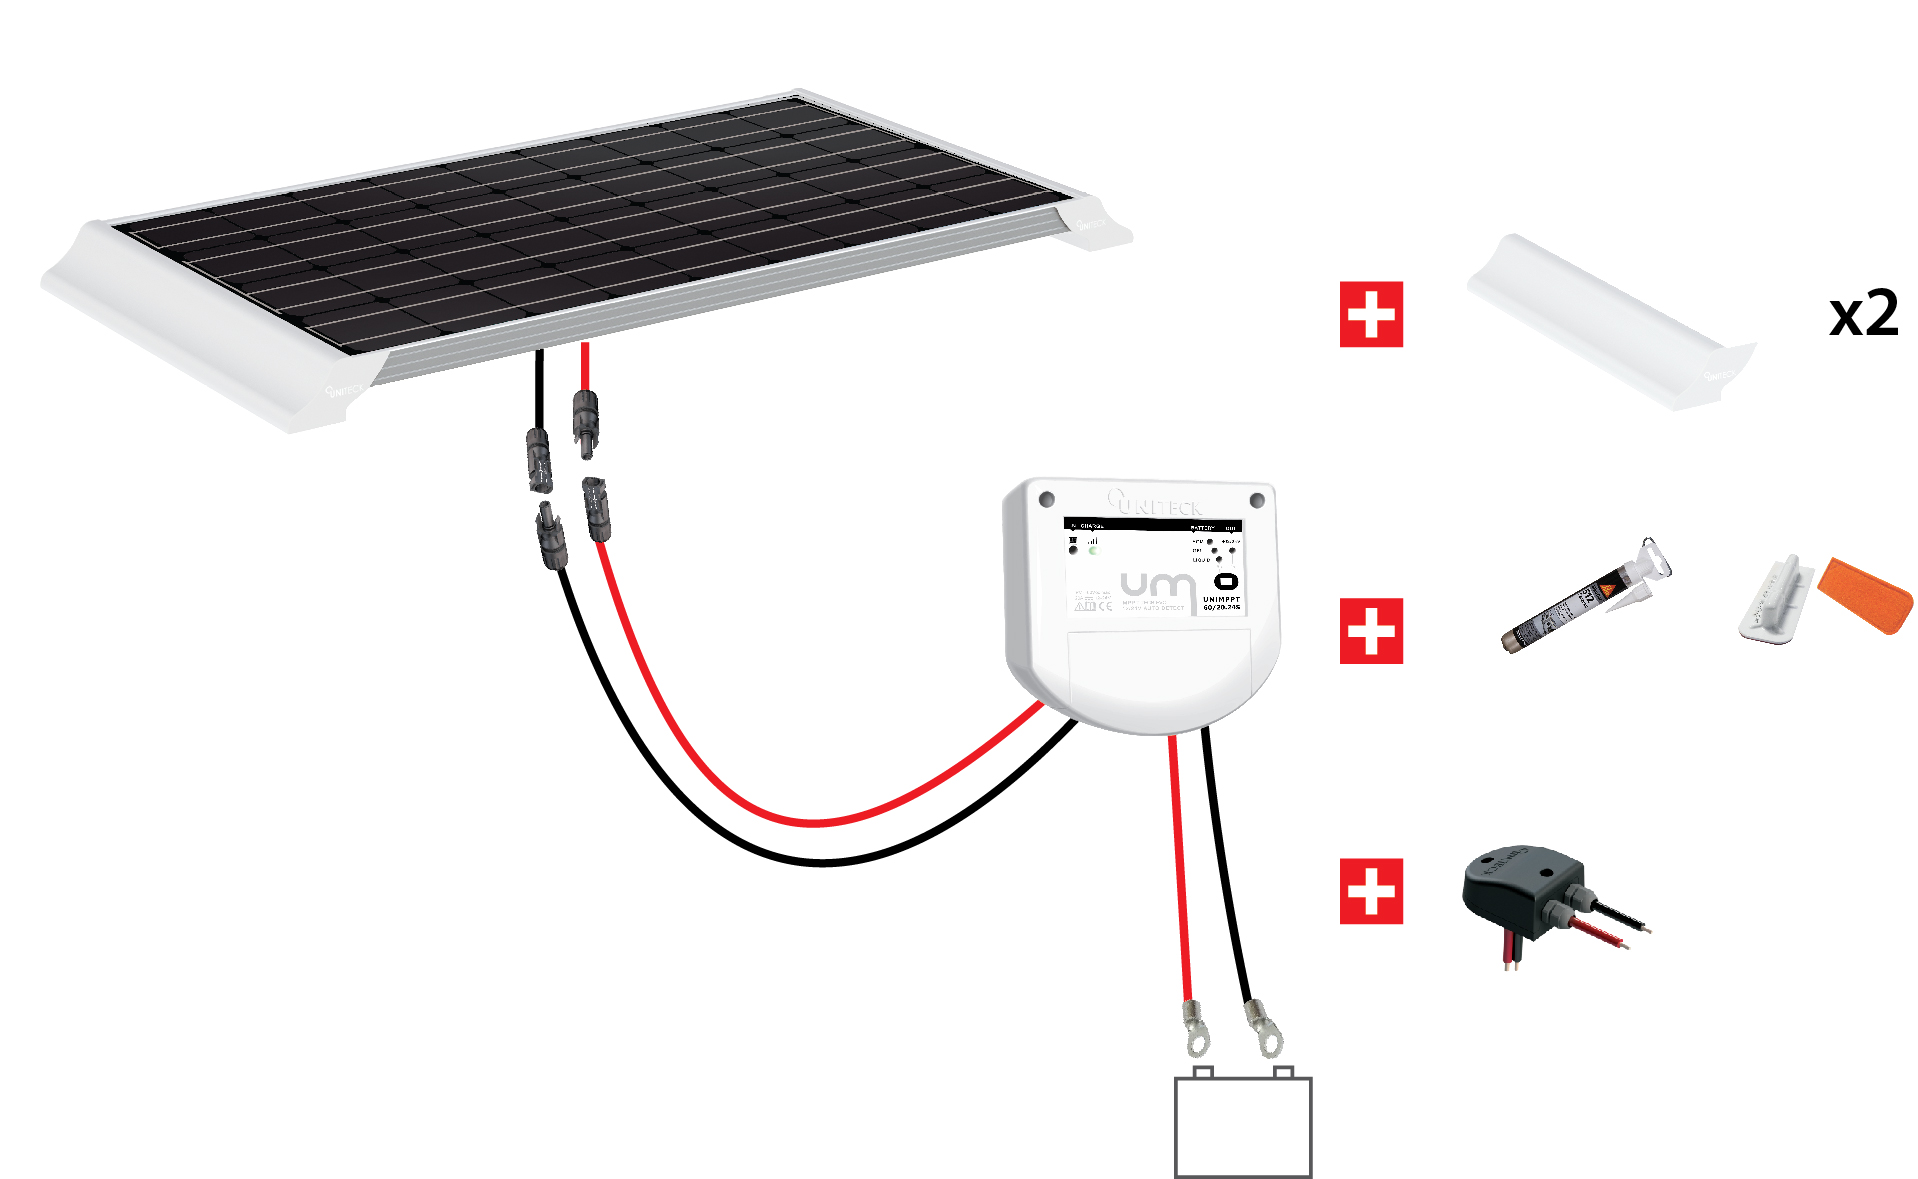 Kit panneaux solaires standard 300W